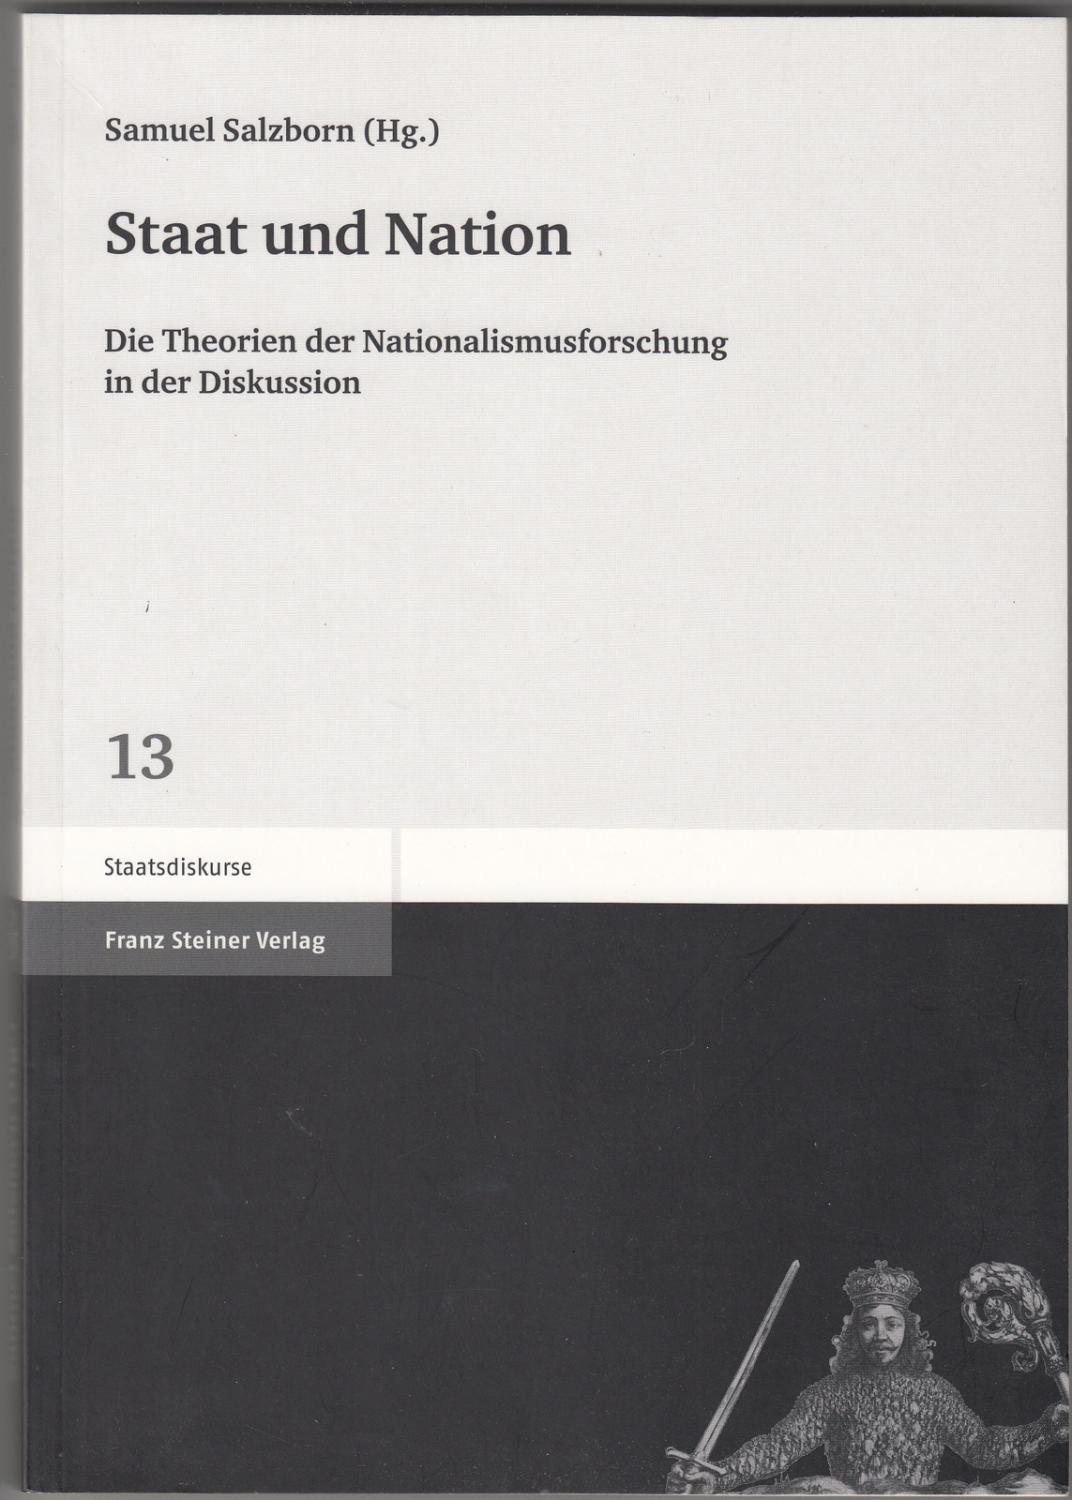 Staat und Nation : Die Theorien der Nationalismusforschung in der Diskussion - Salzborn, Samuel, editor